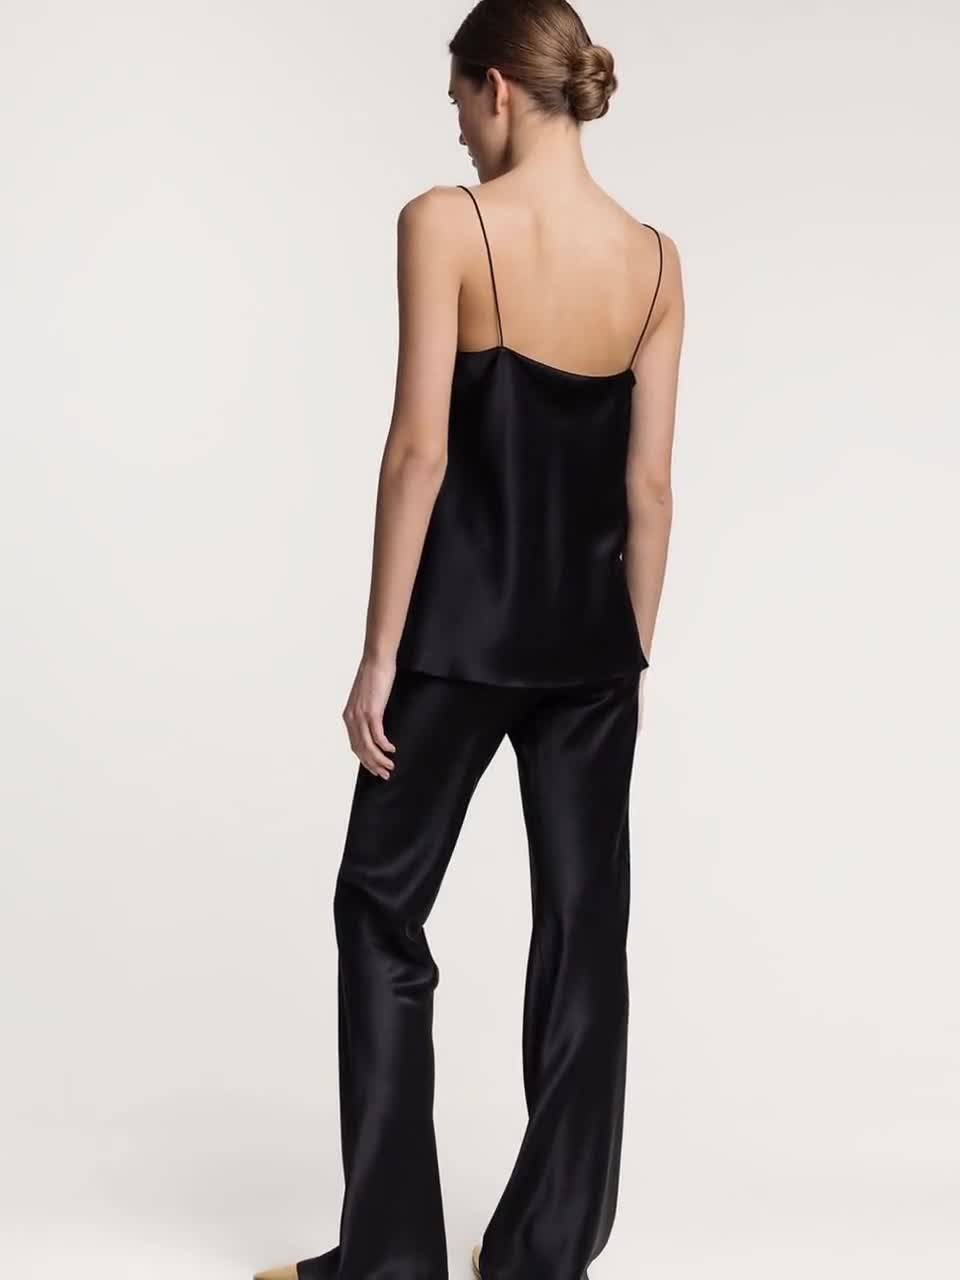 100% Silk Slip Dress Black Midi Pure Silk Cami Dress Matte Midi Silk Slip  Dress Sand-washed Silk Dress Bias Cut Plus Size Dress XL 